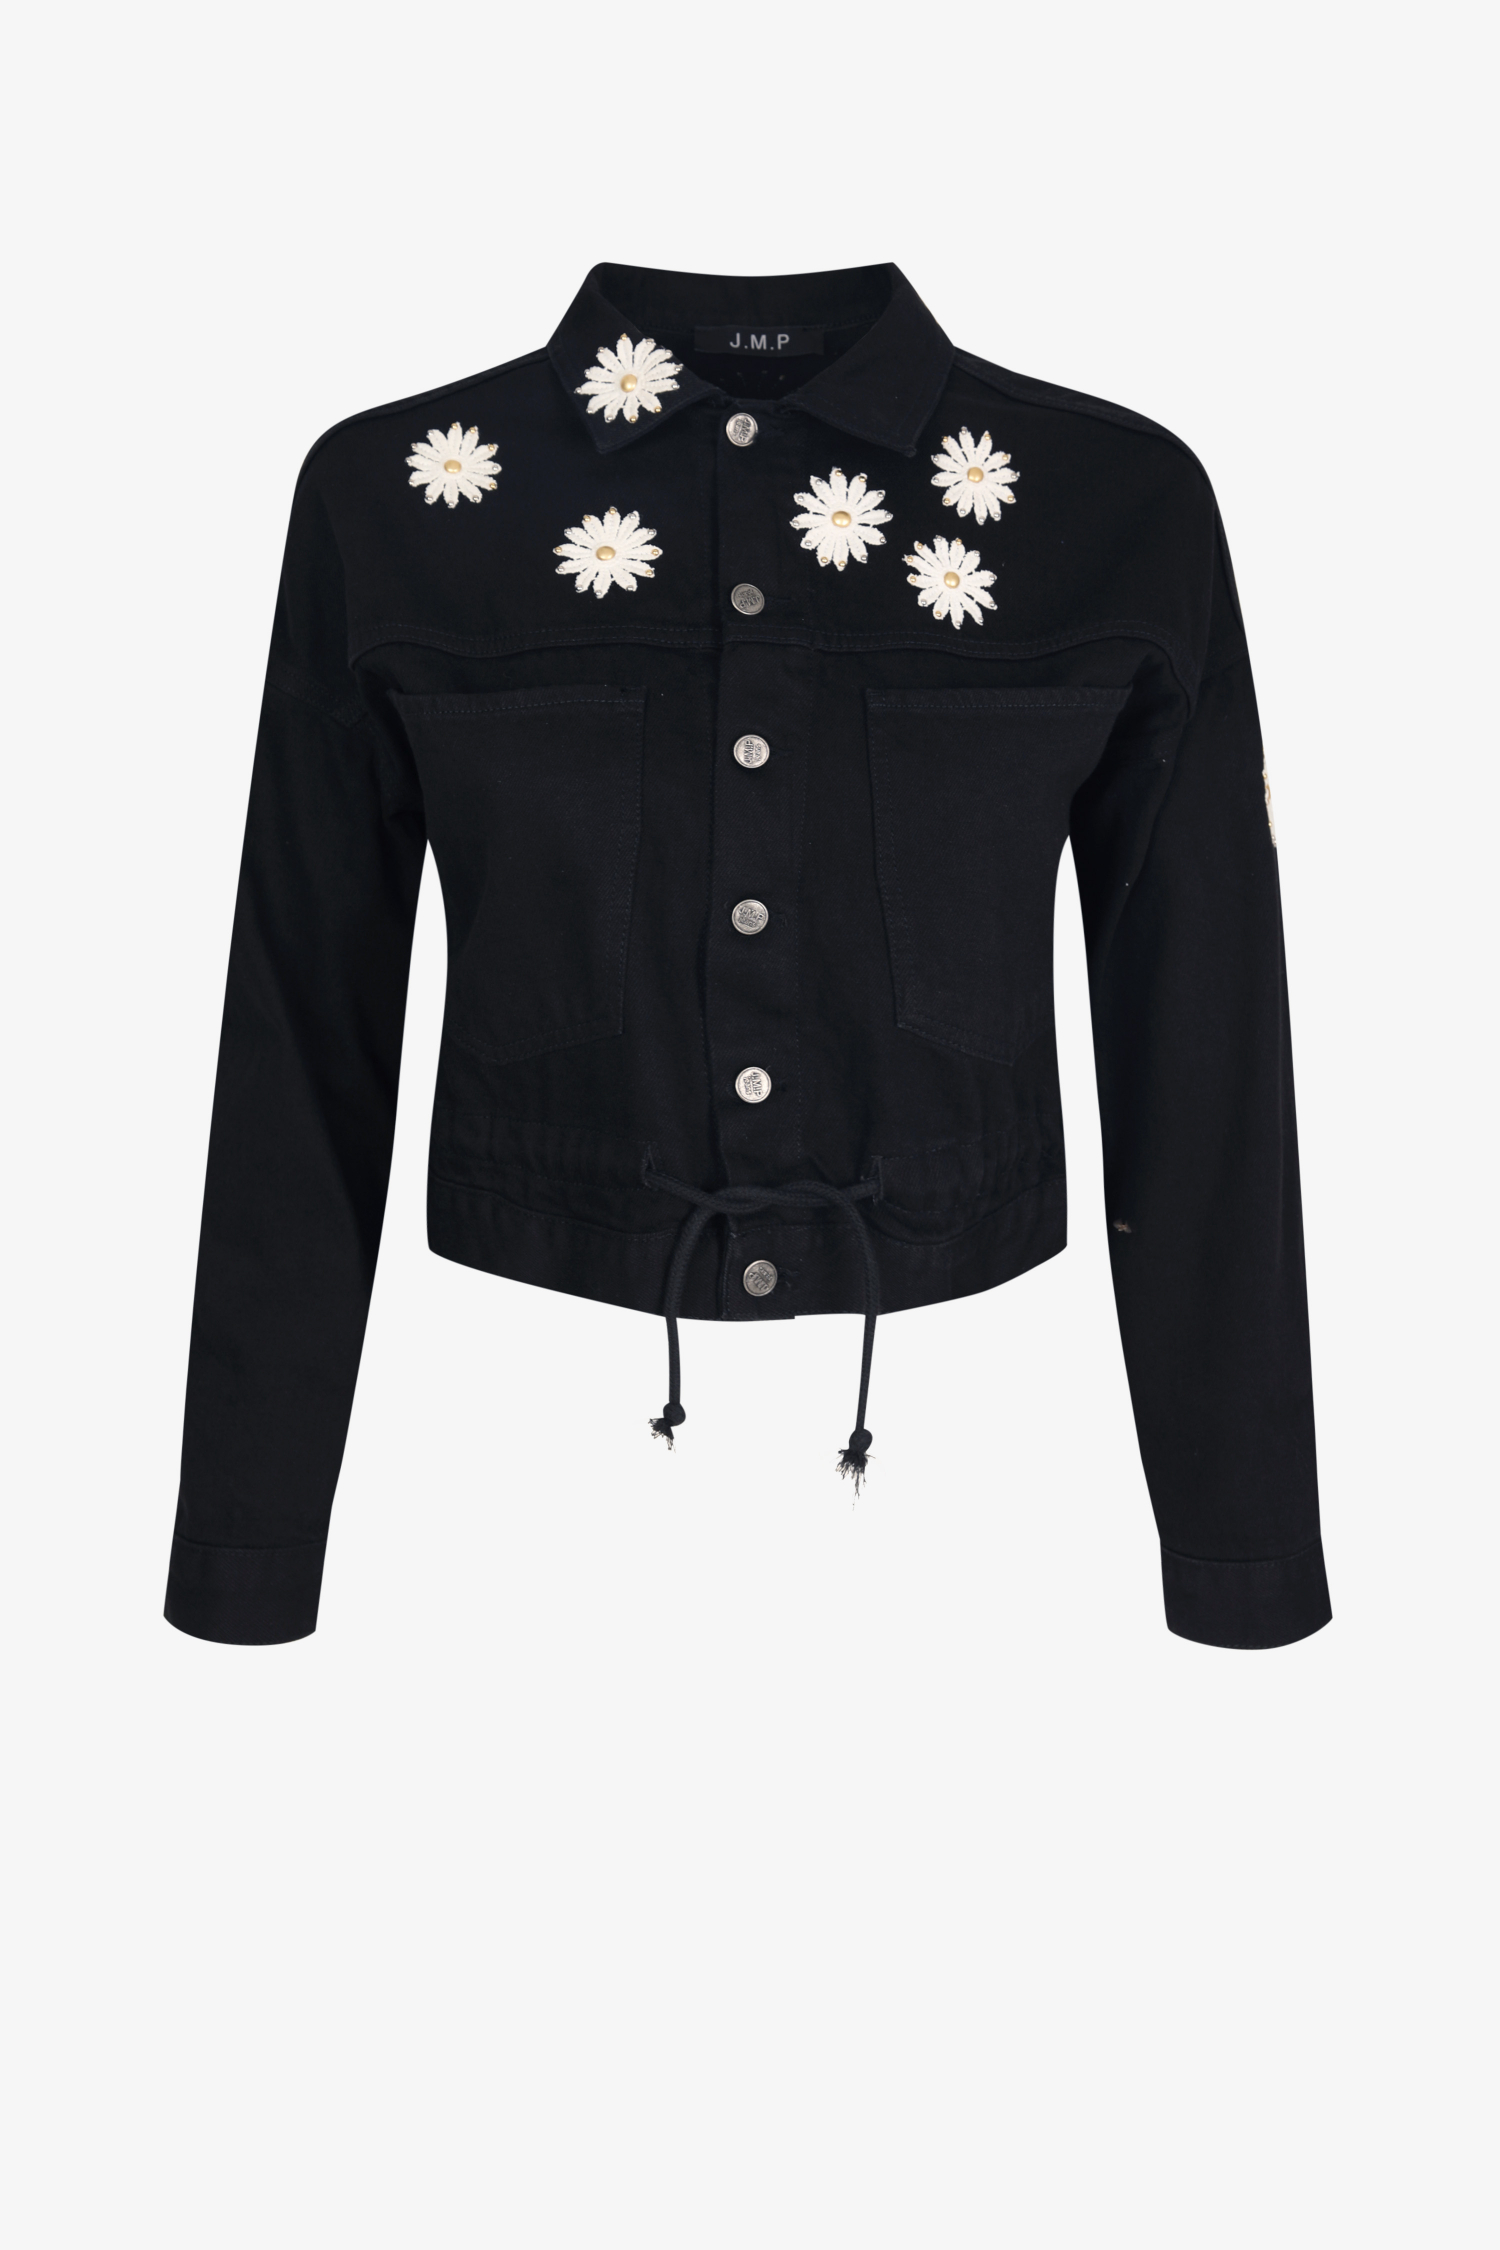 short denim jacket with daisy